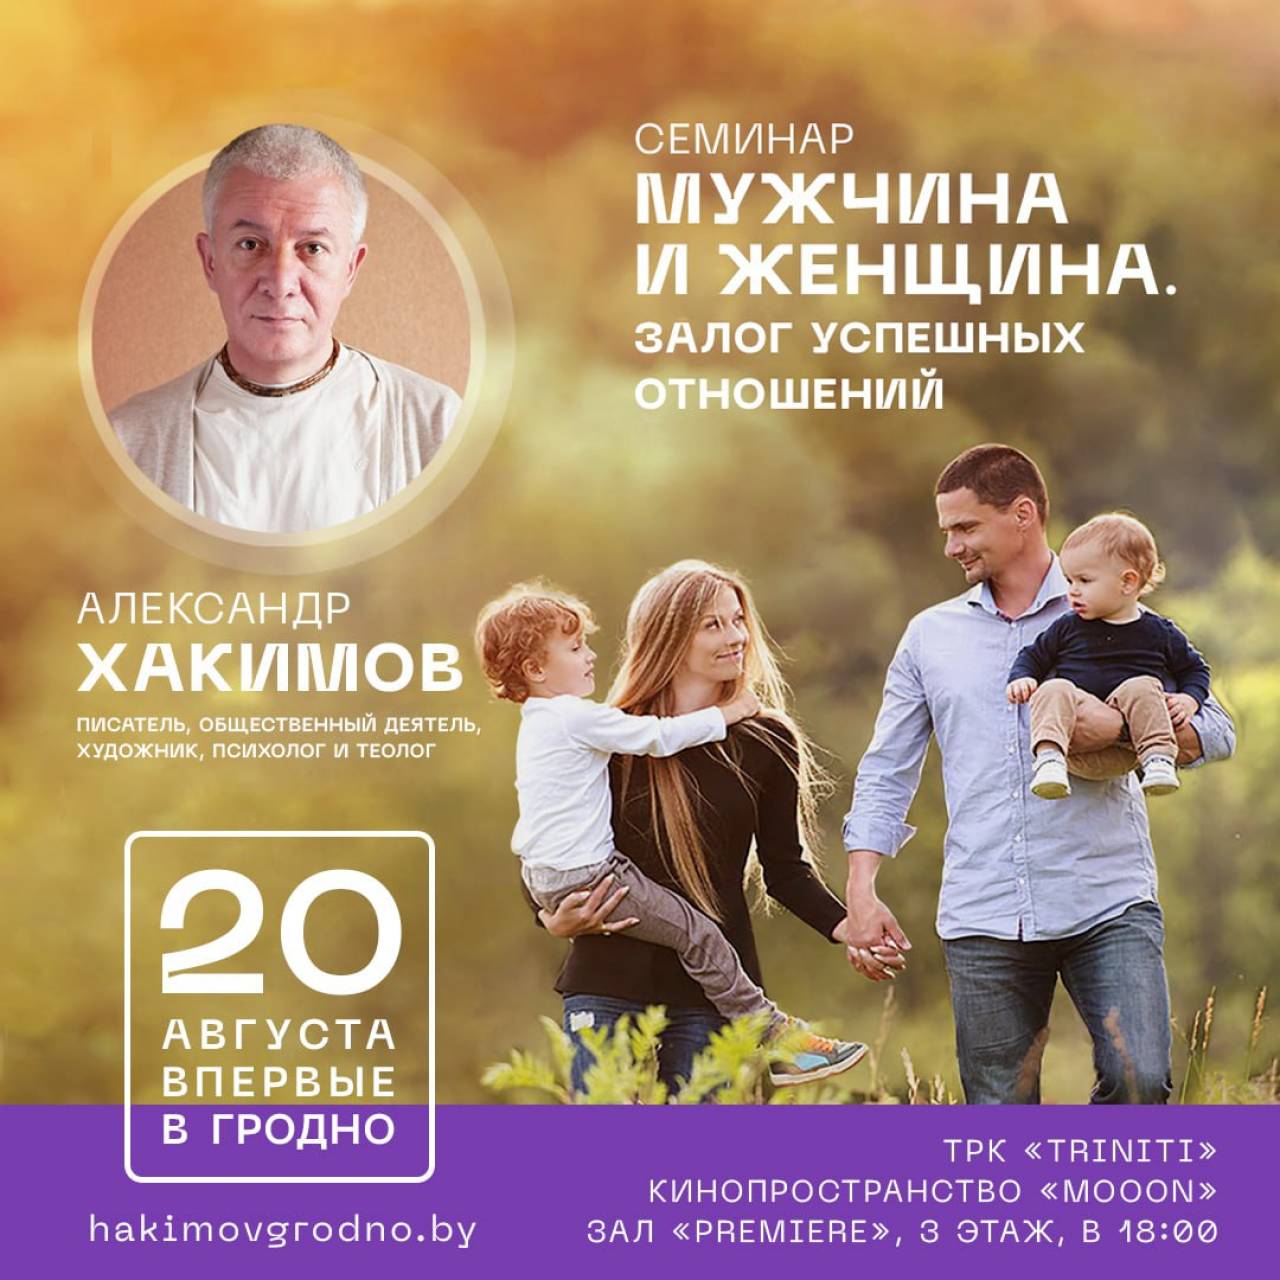 В Гродно состоится семинар Александра Хакимова, посвященный гармоничным отношениям между мужчиной и женщиной